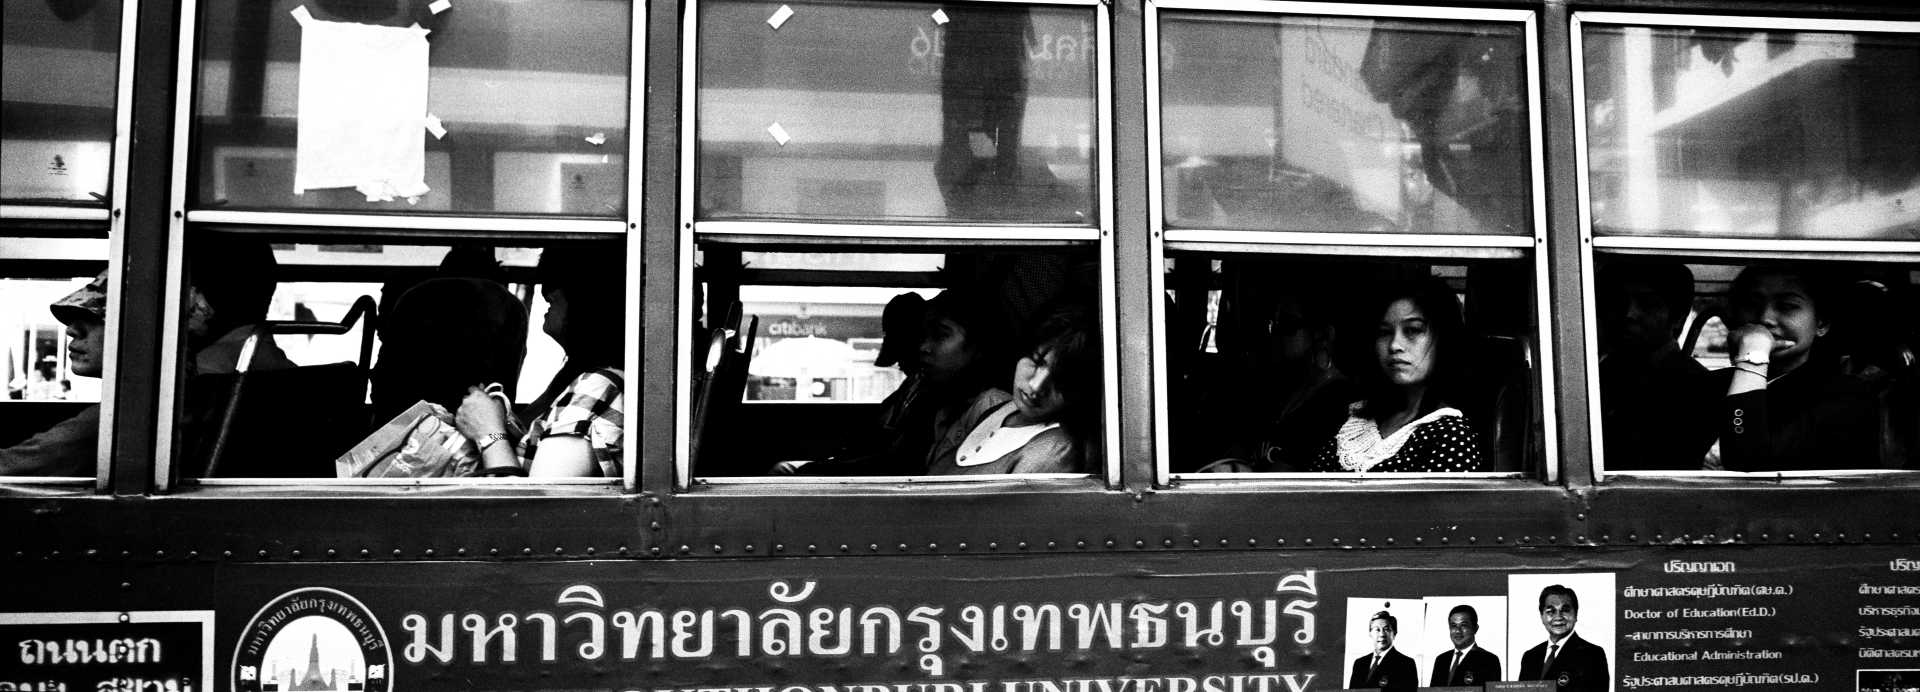  "On The Bus"&nbsp;&nbsp;Bangkok, Thailand. 